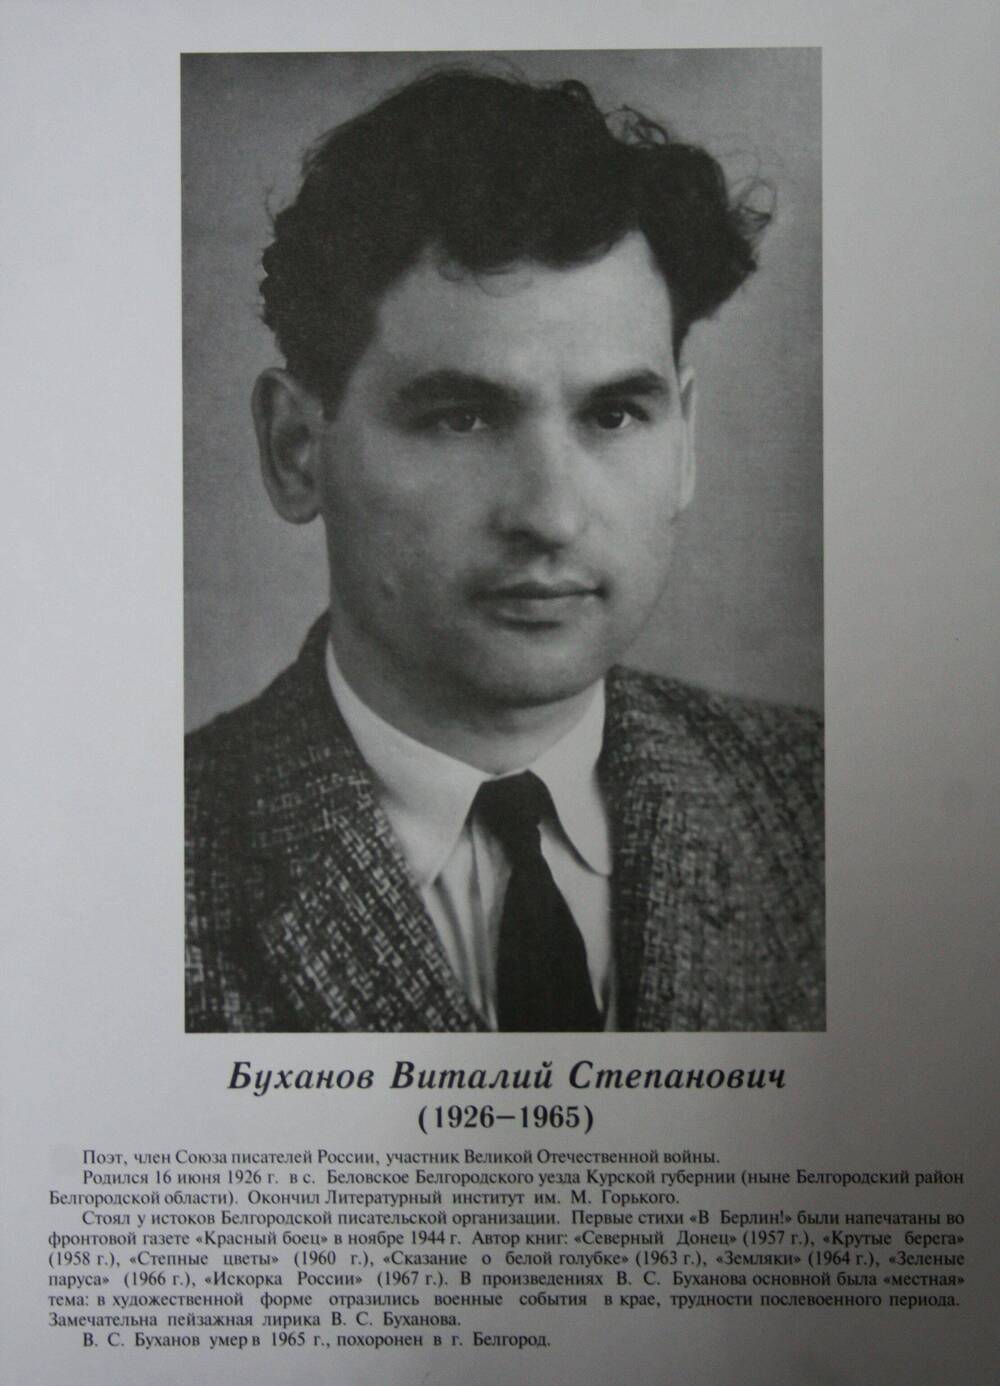 Плакат (фотопортрет) из комплекта Галерея славных имен Белгородчины. Буханов Виталий Степанович (1926-1965).